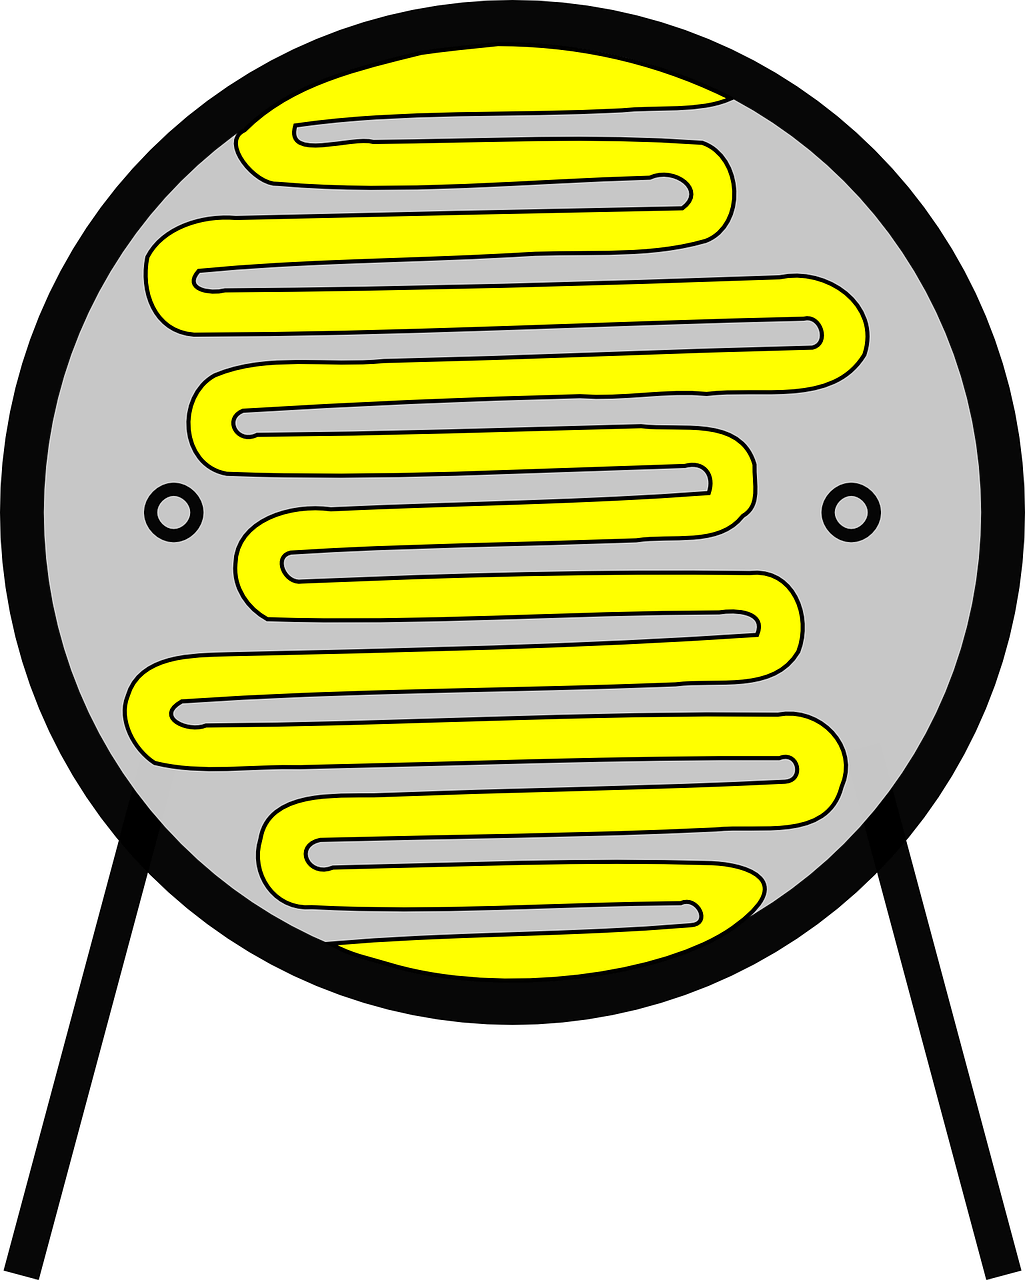 La imagen muestra un detector de luz